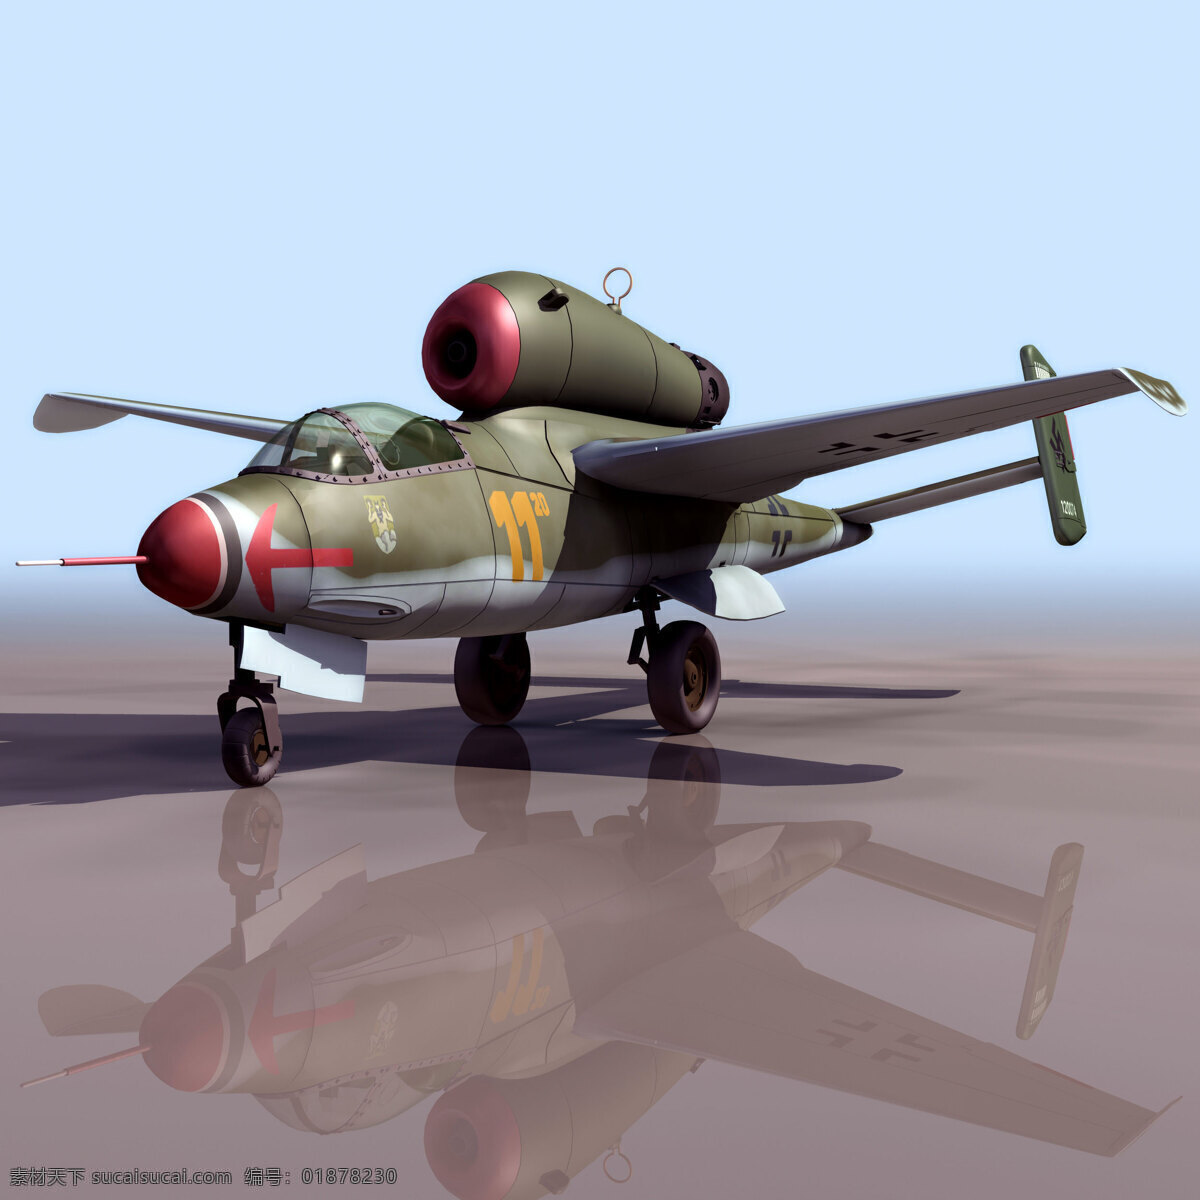 飞机模型 he 军事模型 he162 空军武器库 3d模型素材 其他3d模型